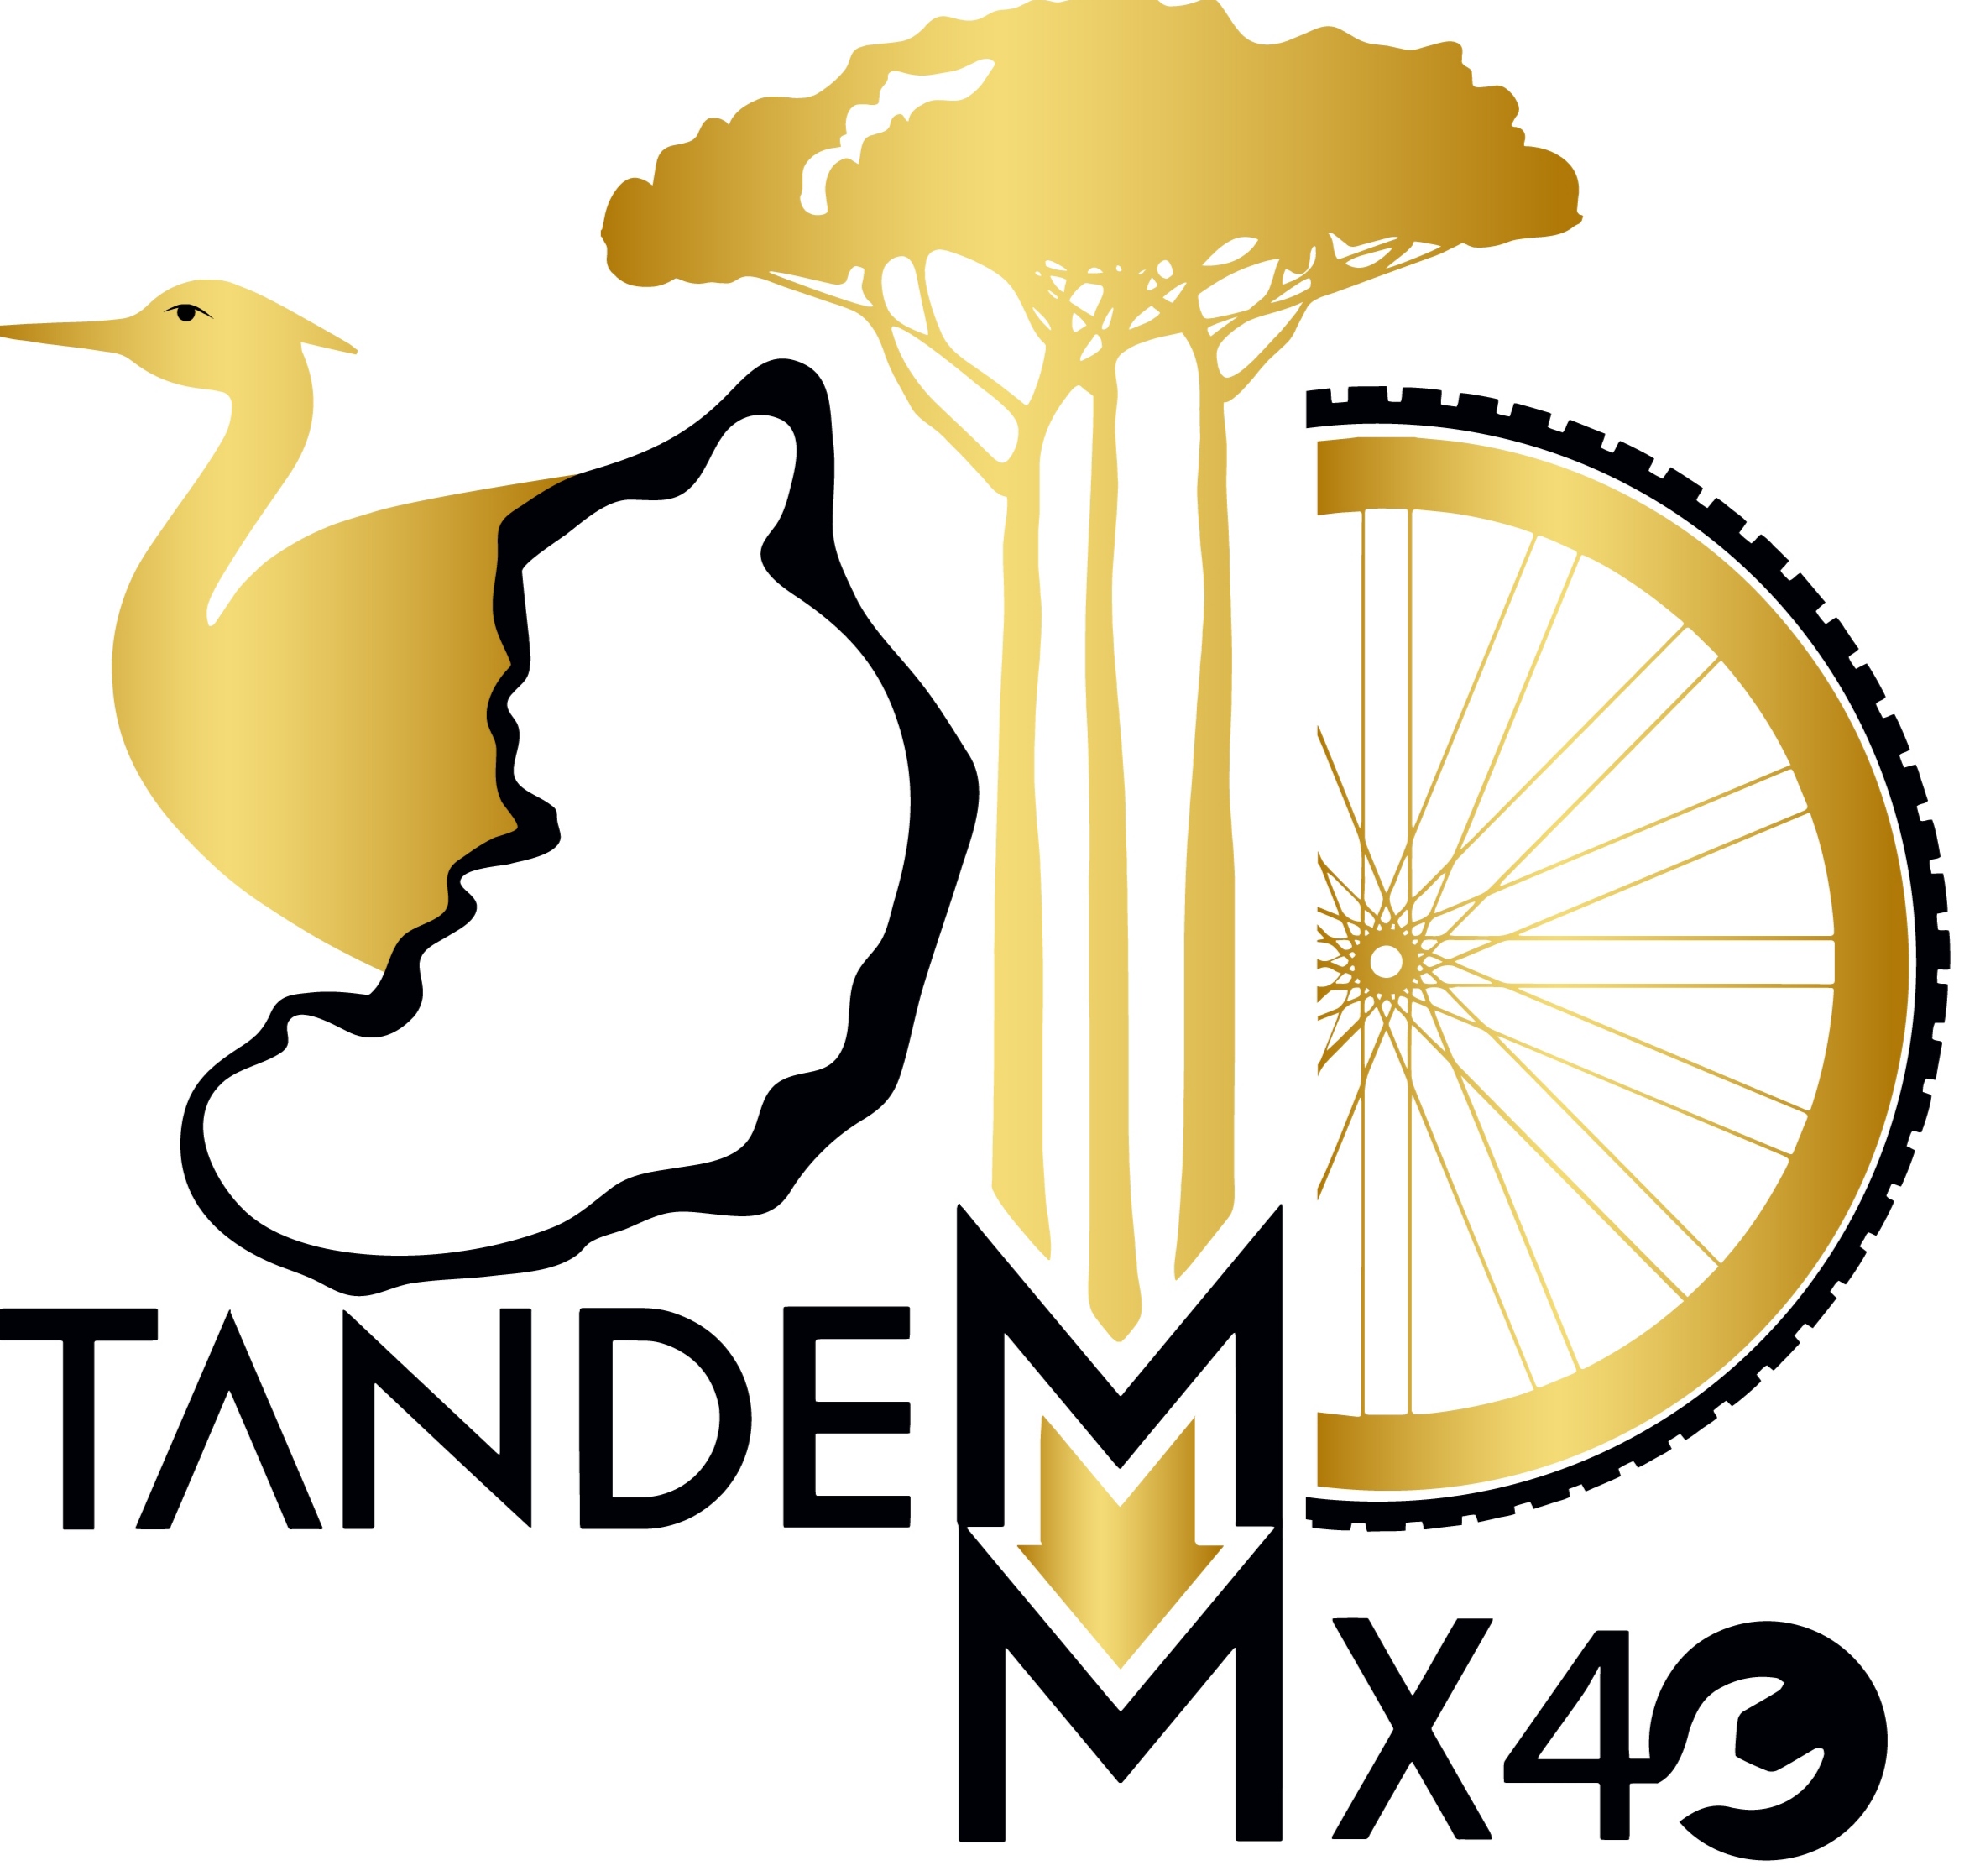 TANDEM MX40